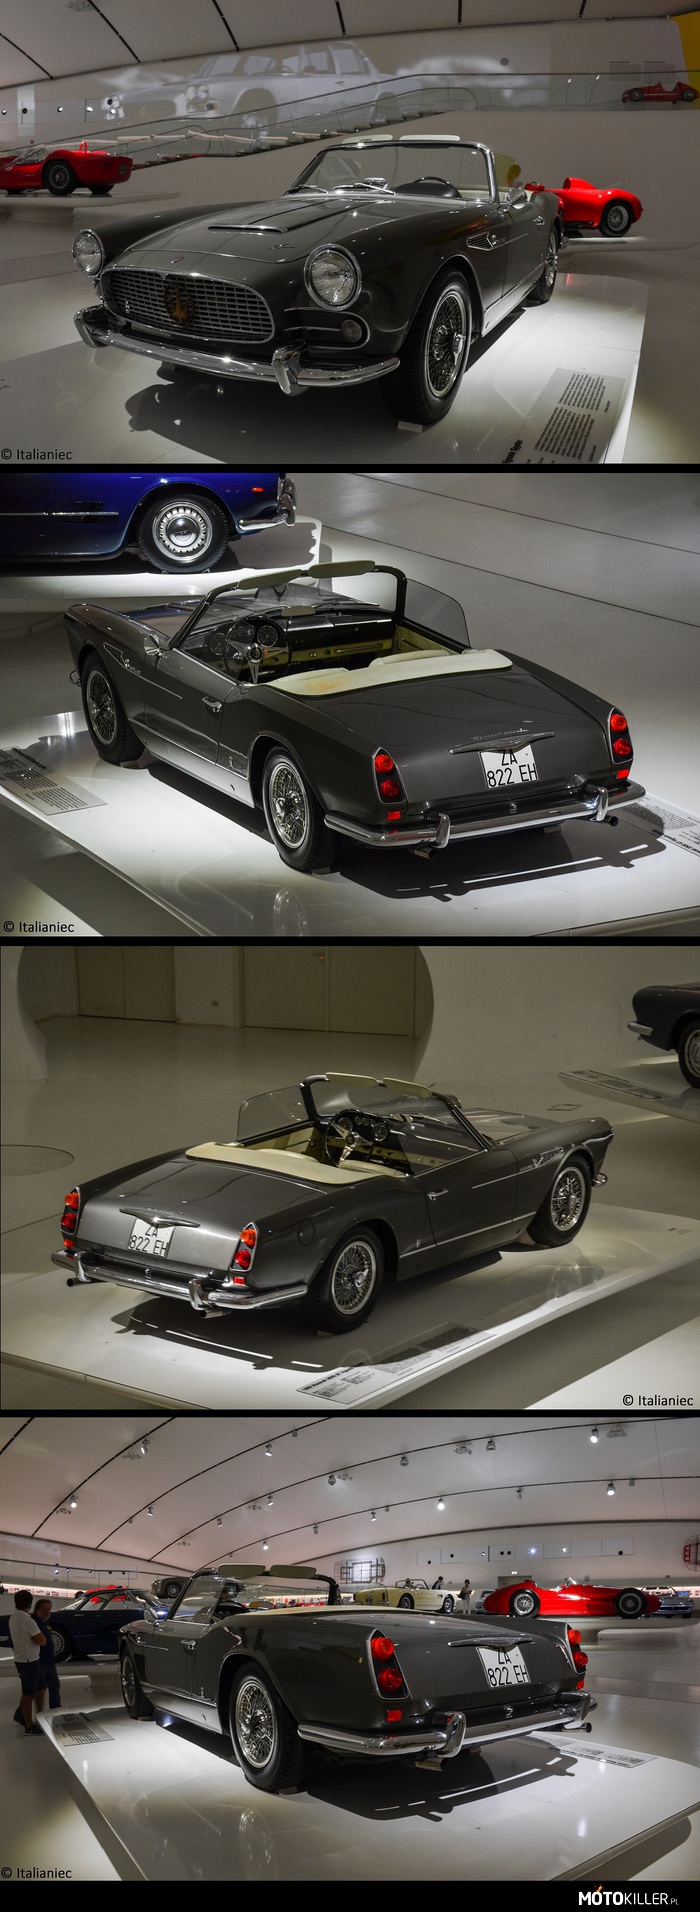 Maserati 3500 GT Vignale Spyder – W 1959 na Międzynarodowym Salonem Samochodowym w Paryżu została zaprezentowana wersja ze składanym dachem modelu 3500GT. Narysowany przez Giovanni Michelotti i Vignale, wszedł do produkcji rok później. 
Pod maską pracowała &quot;rzędowa szóstka&quot; o pojemności 3.5l i 220 KM, wersja spider jest mniejsza i lżejsza od wersji coupè. 